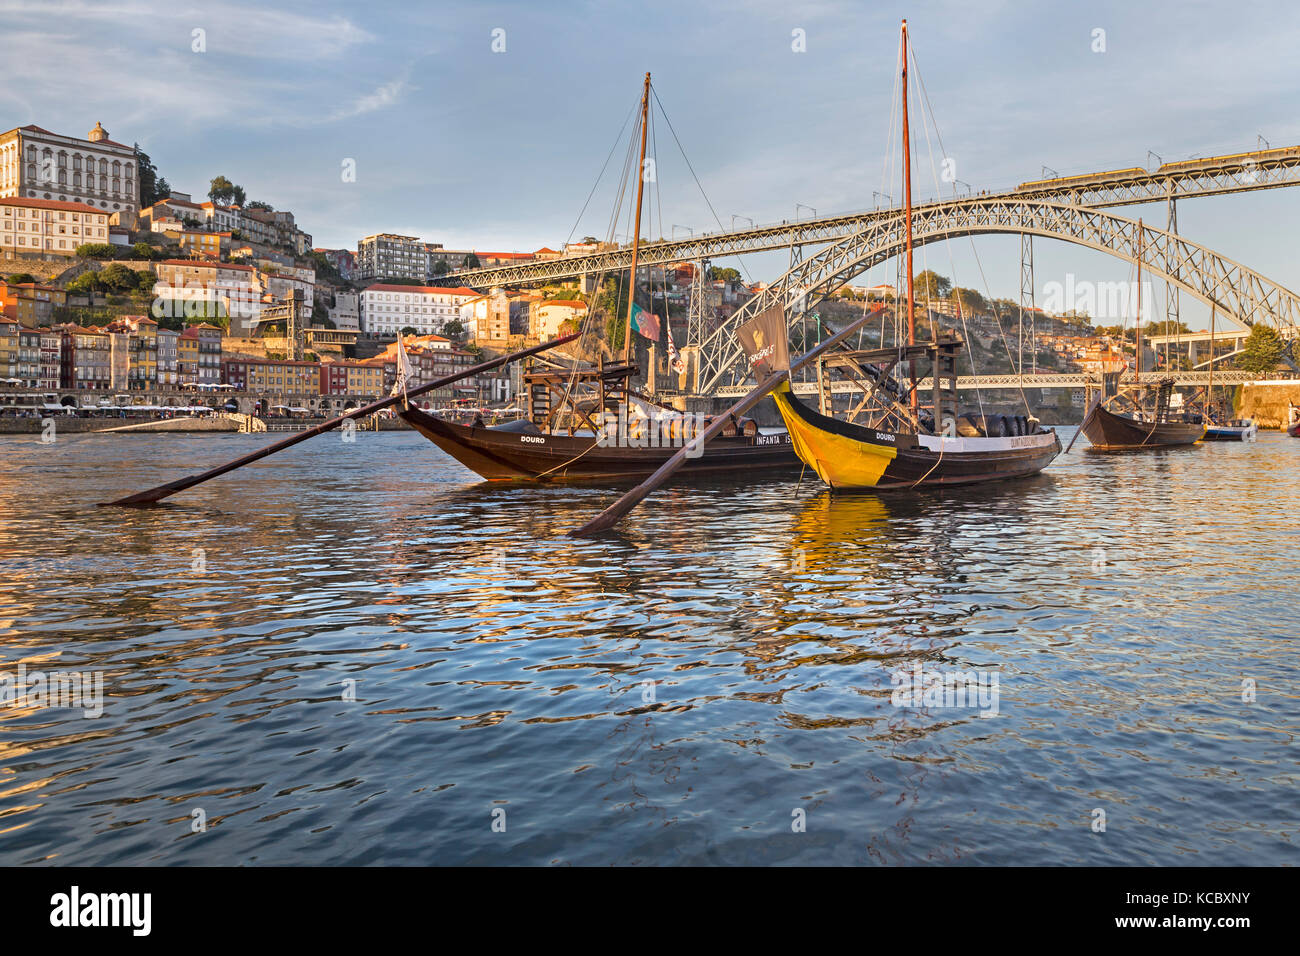 Bateaux rabelo, le vin de bateaux sur le Rio Douro, Porto, Portugal Banque D'Images